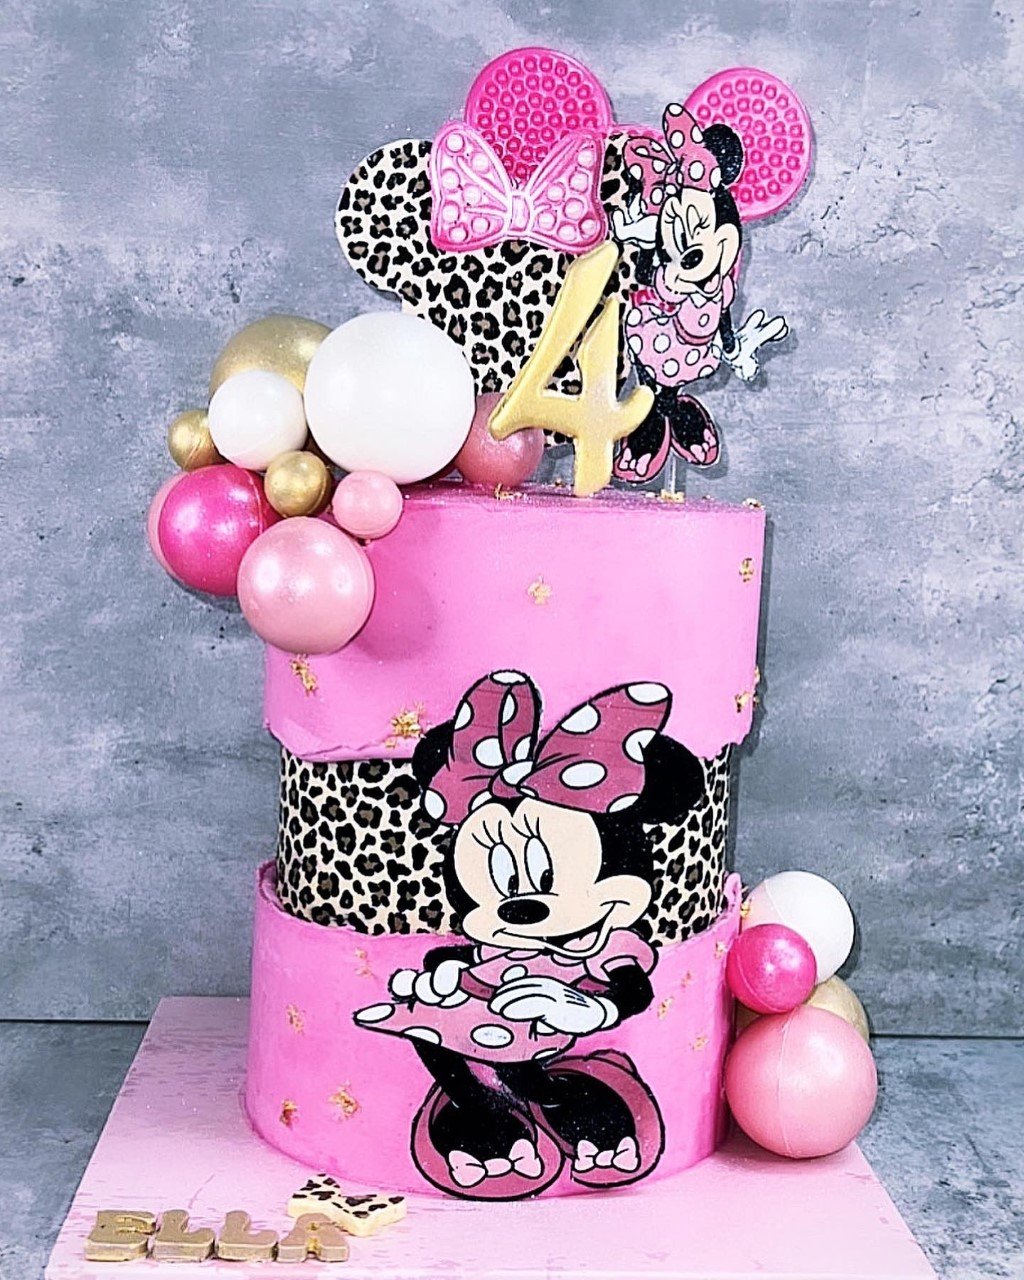 SimasBaking_custom_birthday_cake19.jpeg